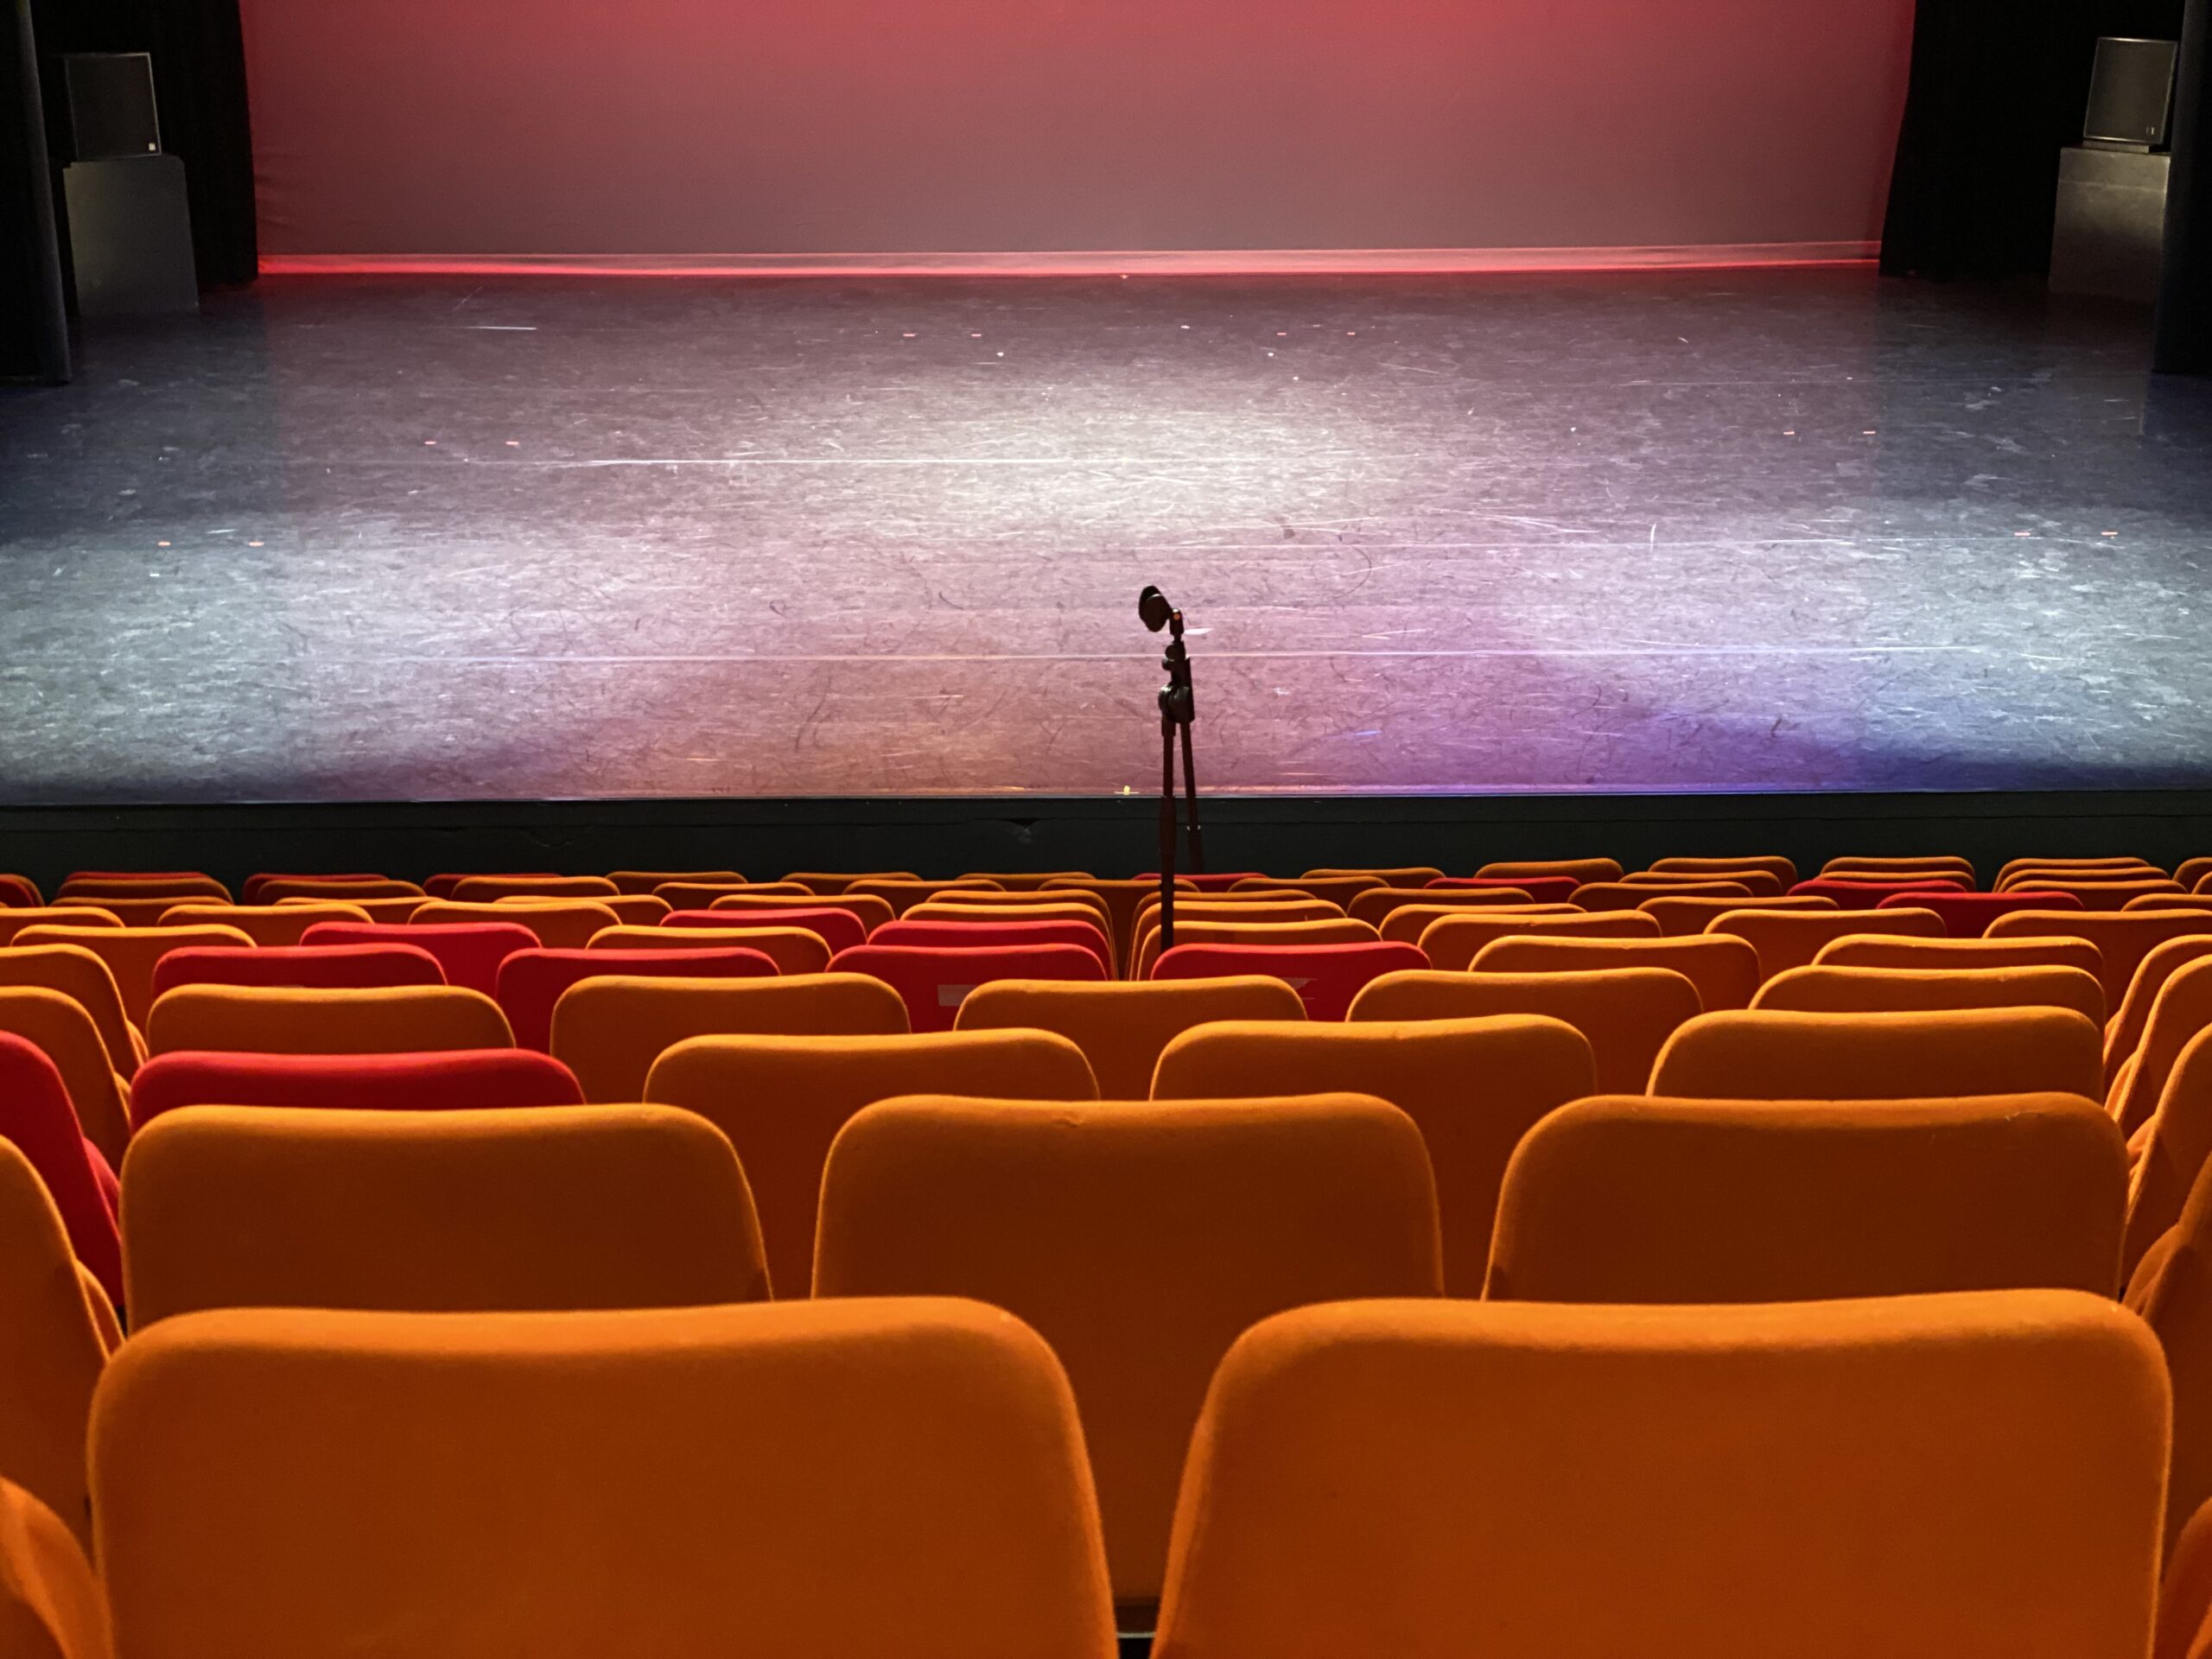 Le Théâtre Benoît XII accueille Les Amis du Théâtre Populaire (ATP) et la Cie Dupoyet Pierrette, pour le spectacle « Louis Braille, au-delà des yeux clos », le 23 février à 20h